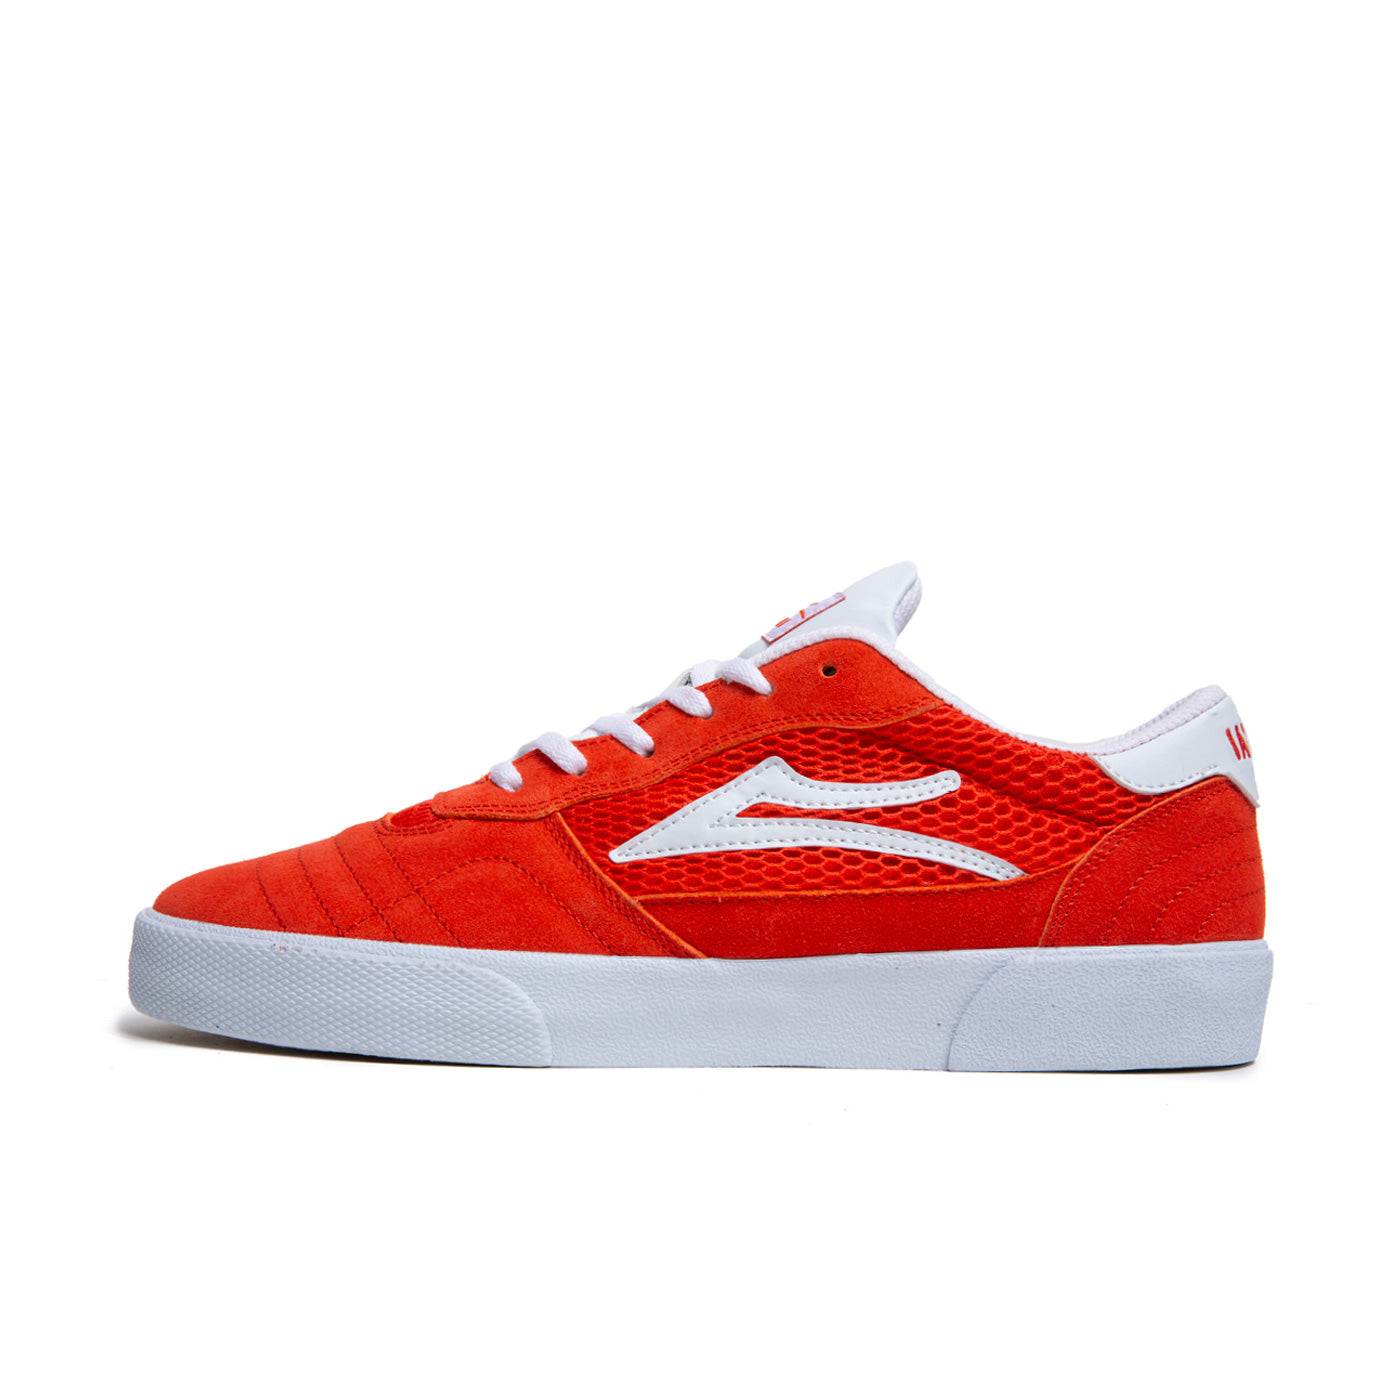 Low top Lakai Cambridge skate shoes, in orange colourway with white Lakai logo on the side.